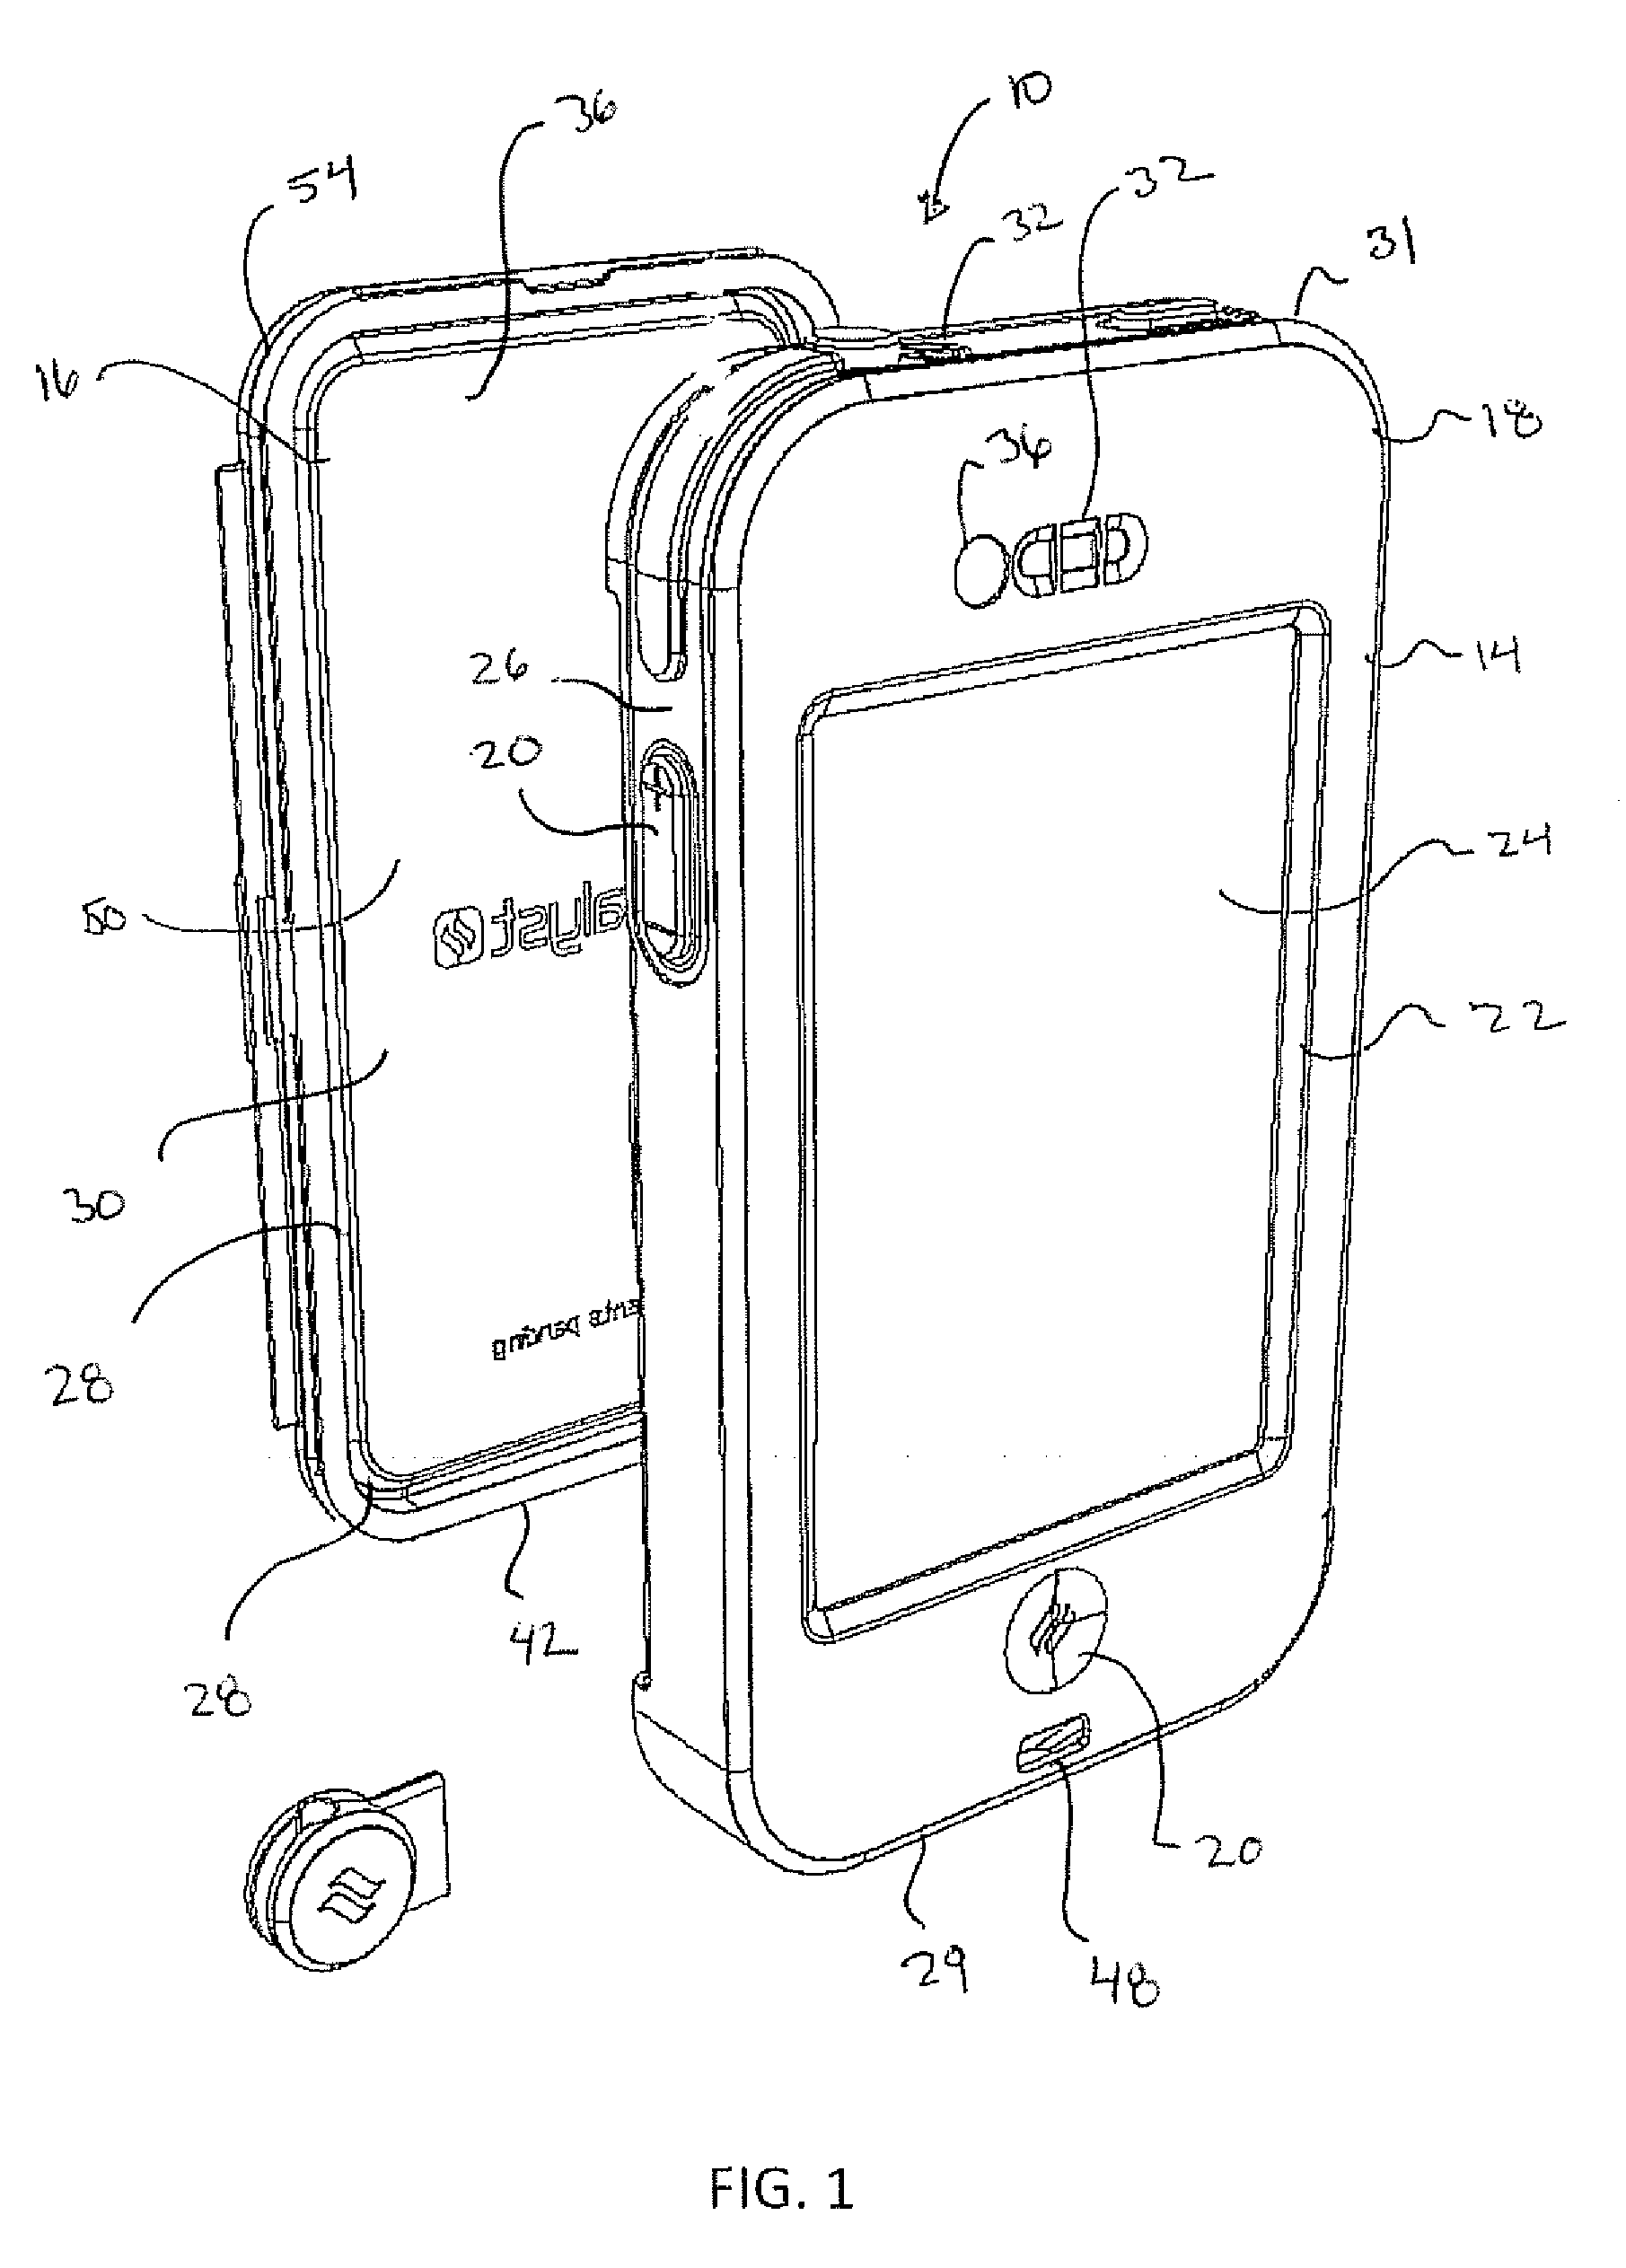 Waterproof case